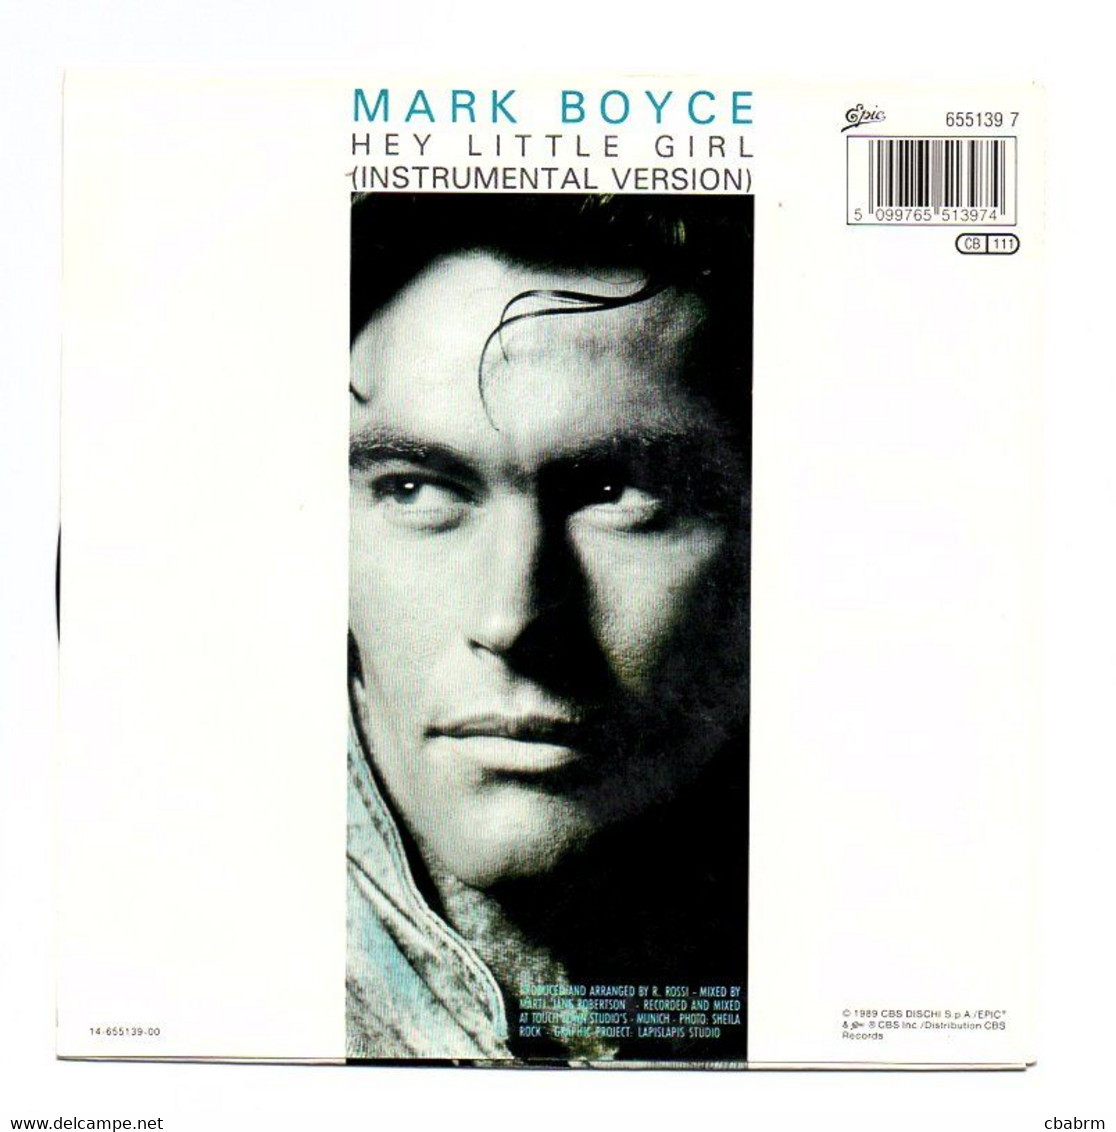 SP 45 TOURS Mark BOYCE HEY LITTLE GIRL - EPIC 655139 7 En 1989 - Dance, Techno & House